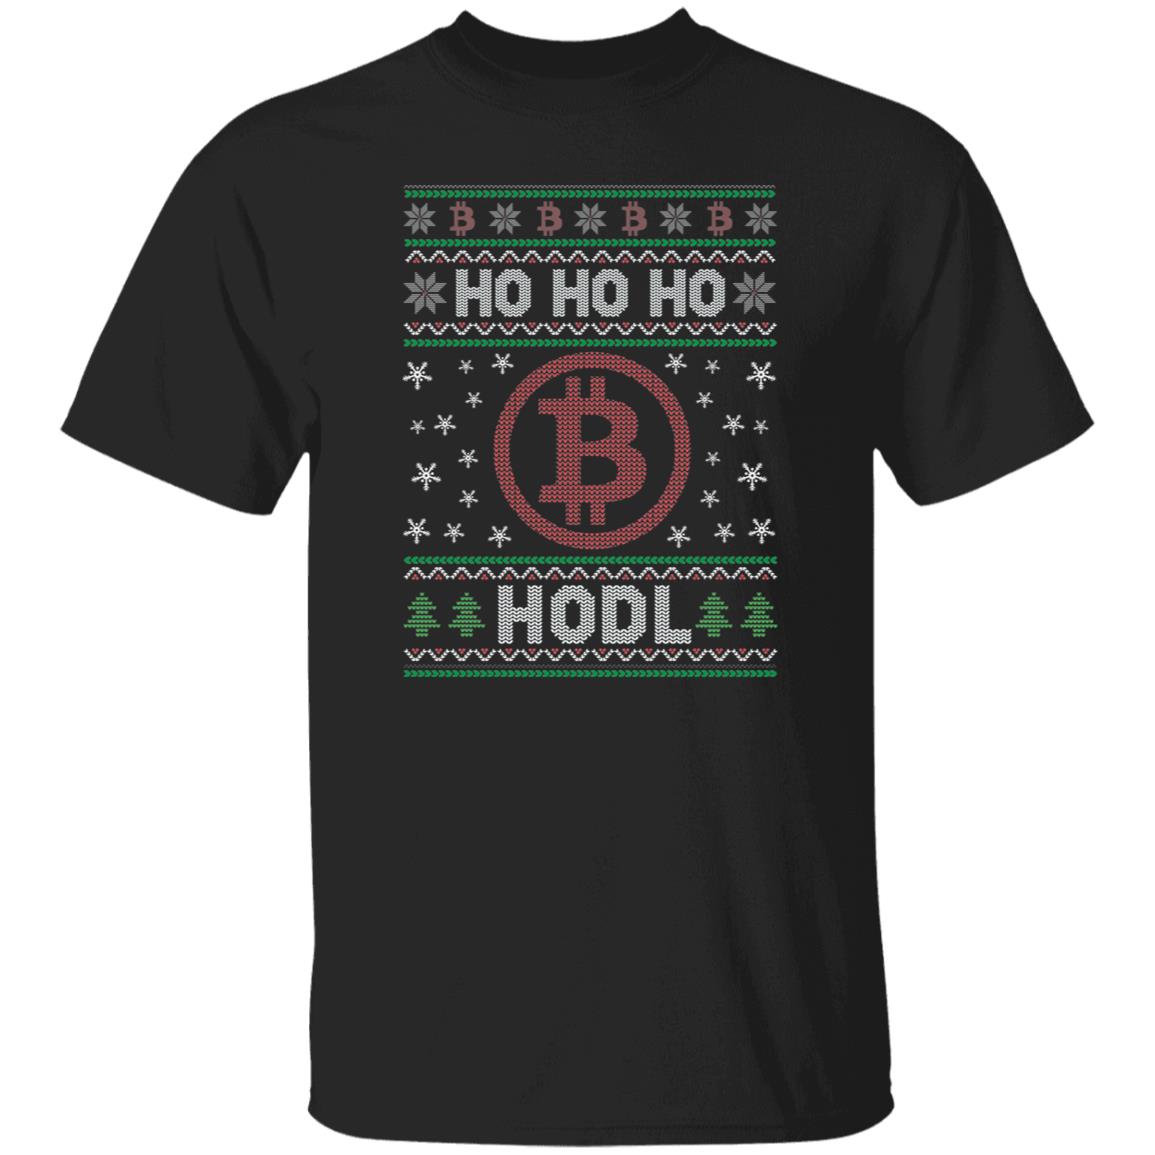 Ho Ho Ho HODL BTC Bitcoin Crypto Shirt, Crypto Ugly Christmas Shirt